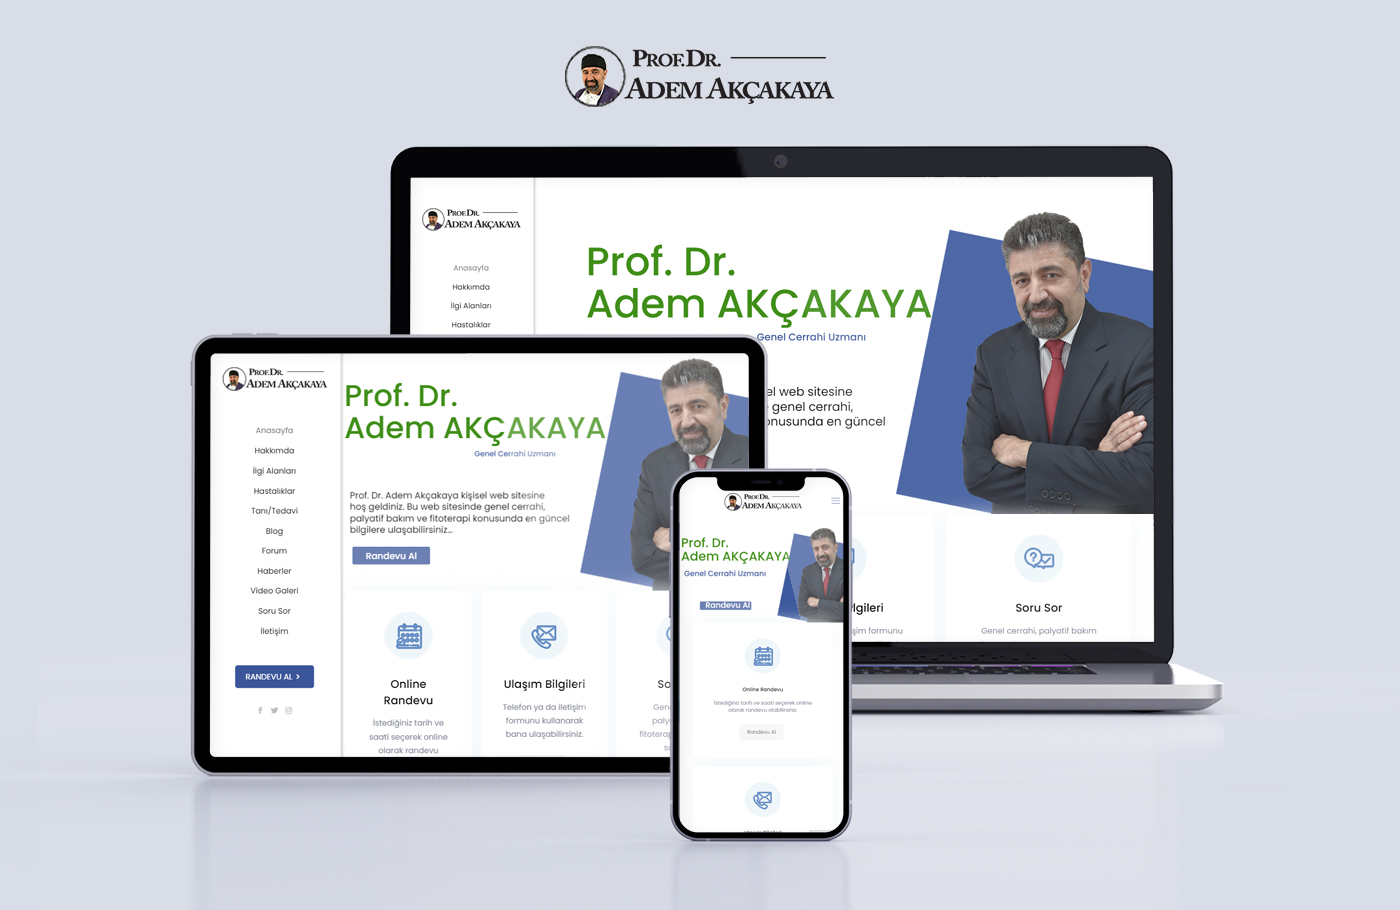 Prof. Dr. Adem Akçakaya